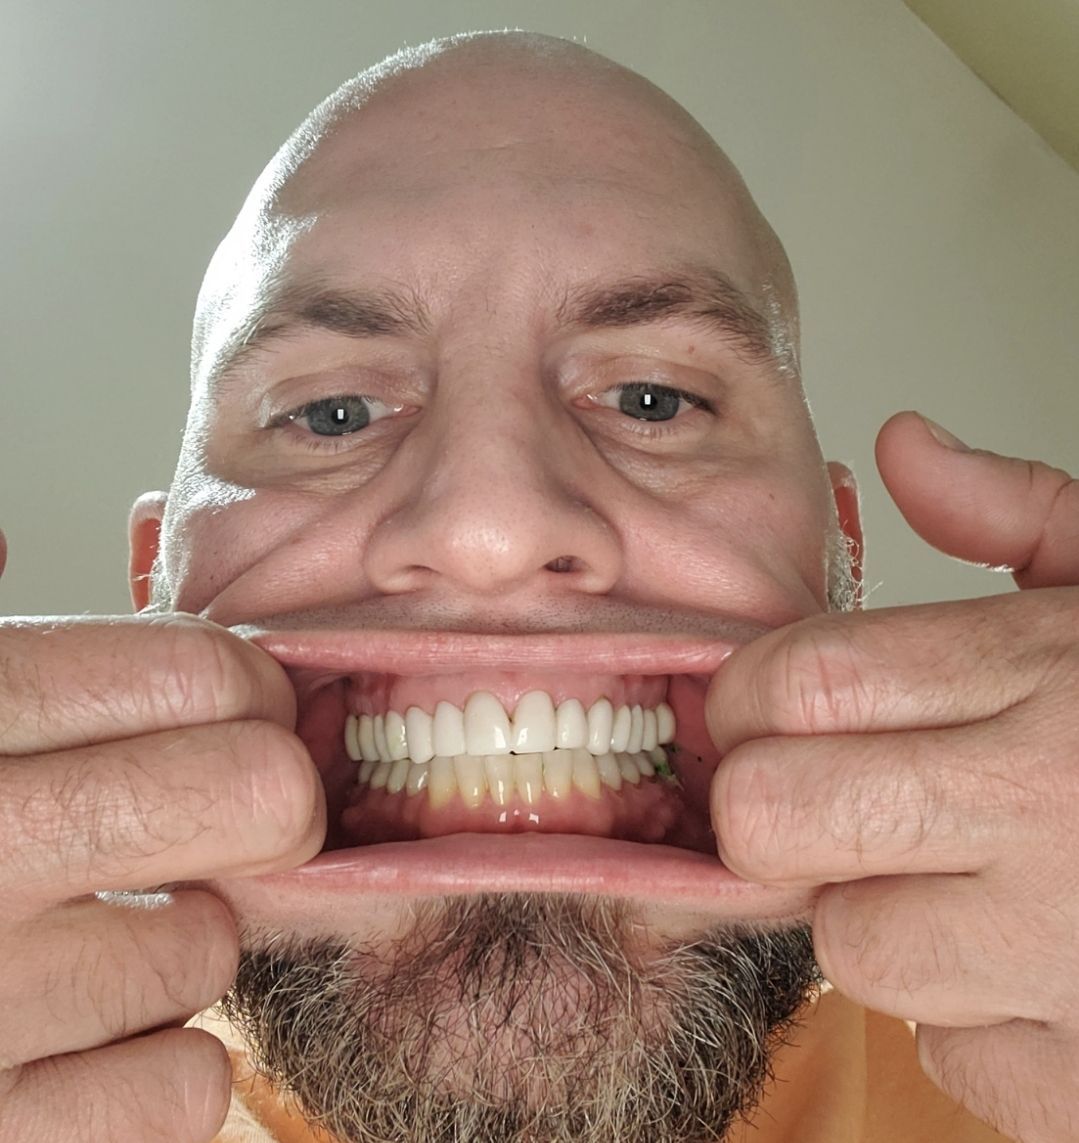 Cosmetic dentist in Tarzana, Full mouth reconstruction in Tarzana, emergency dentist in Tarzana